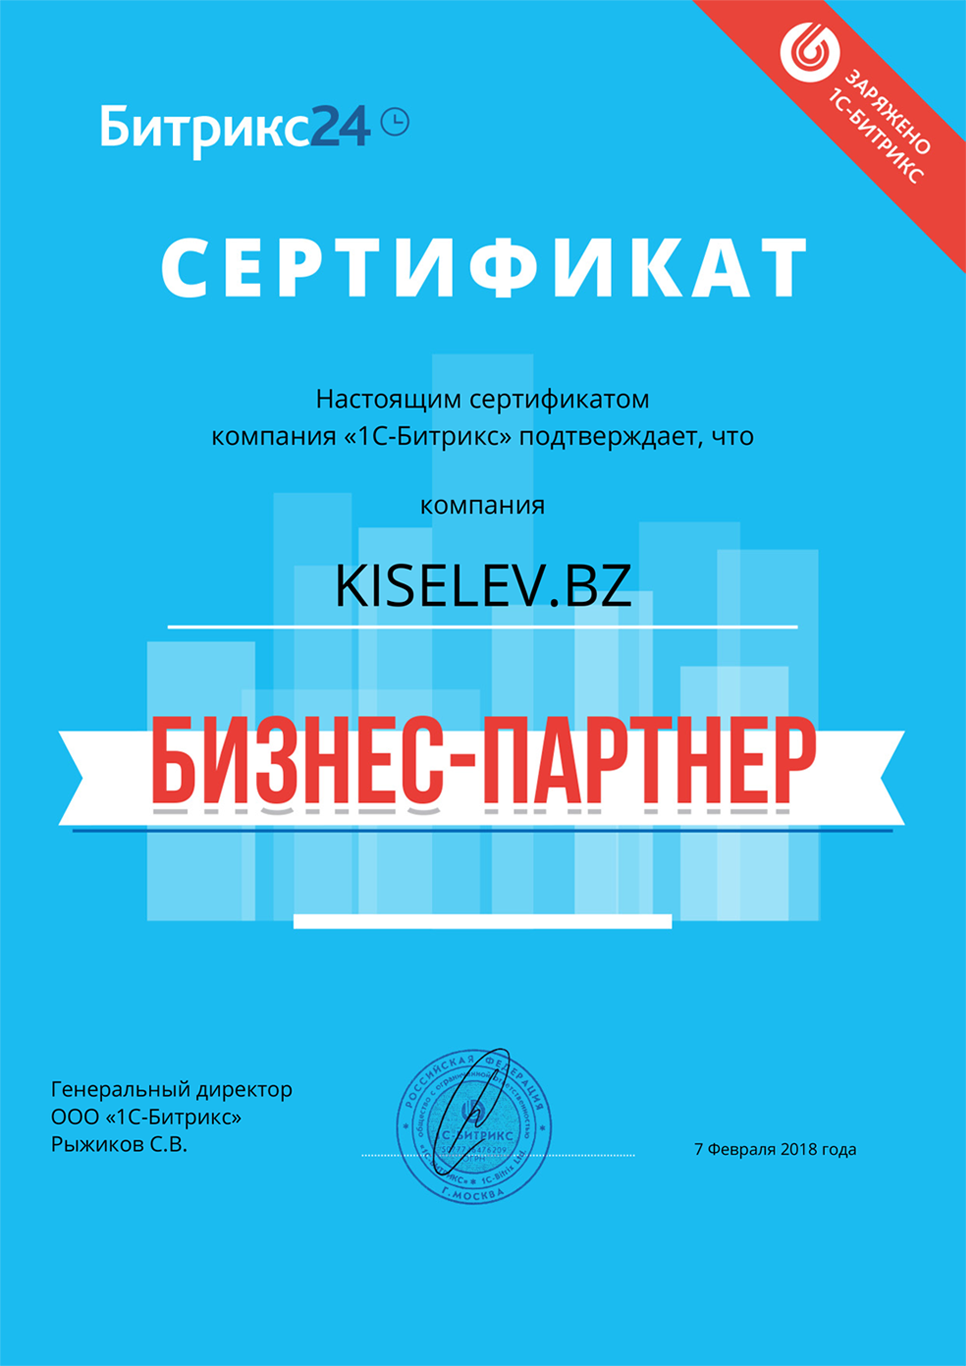 Сертификат партнёра по АМОСРМ в Южно-Сахалинске